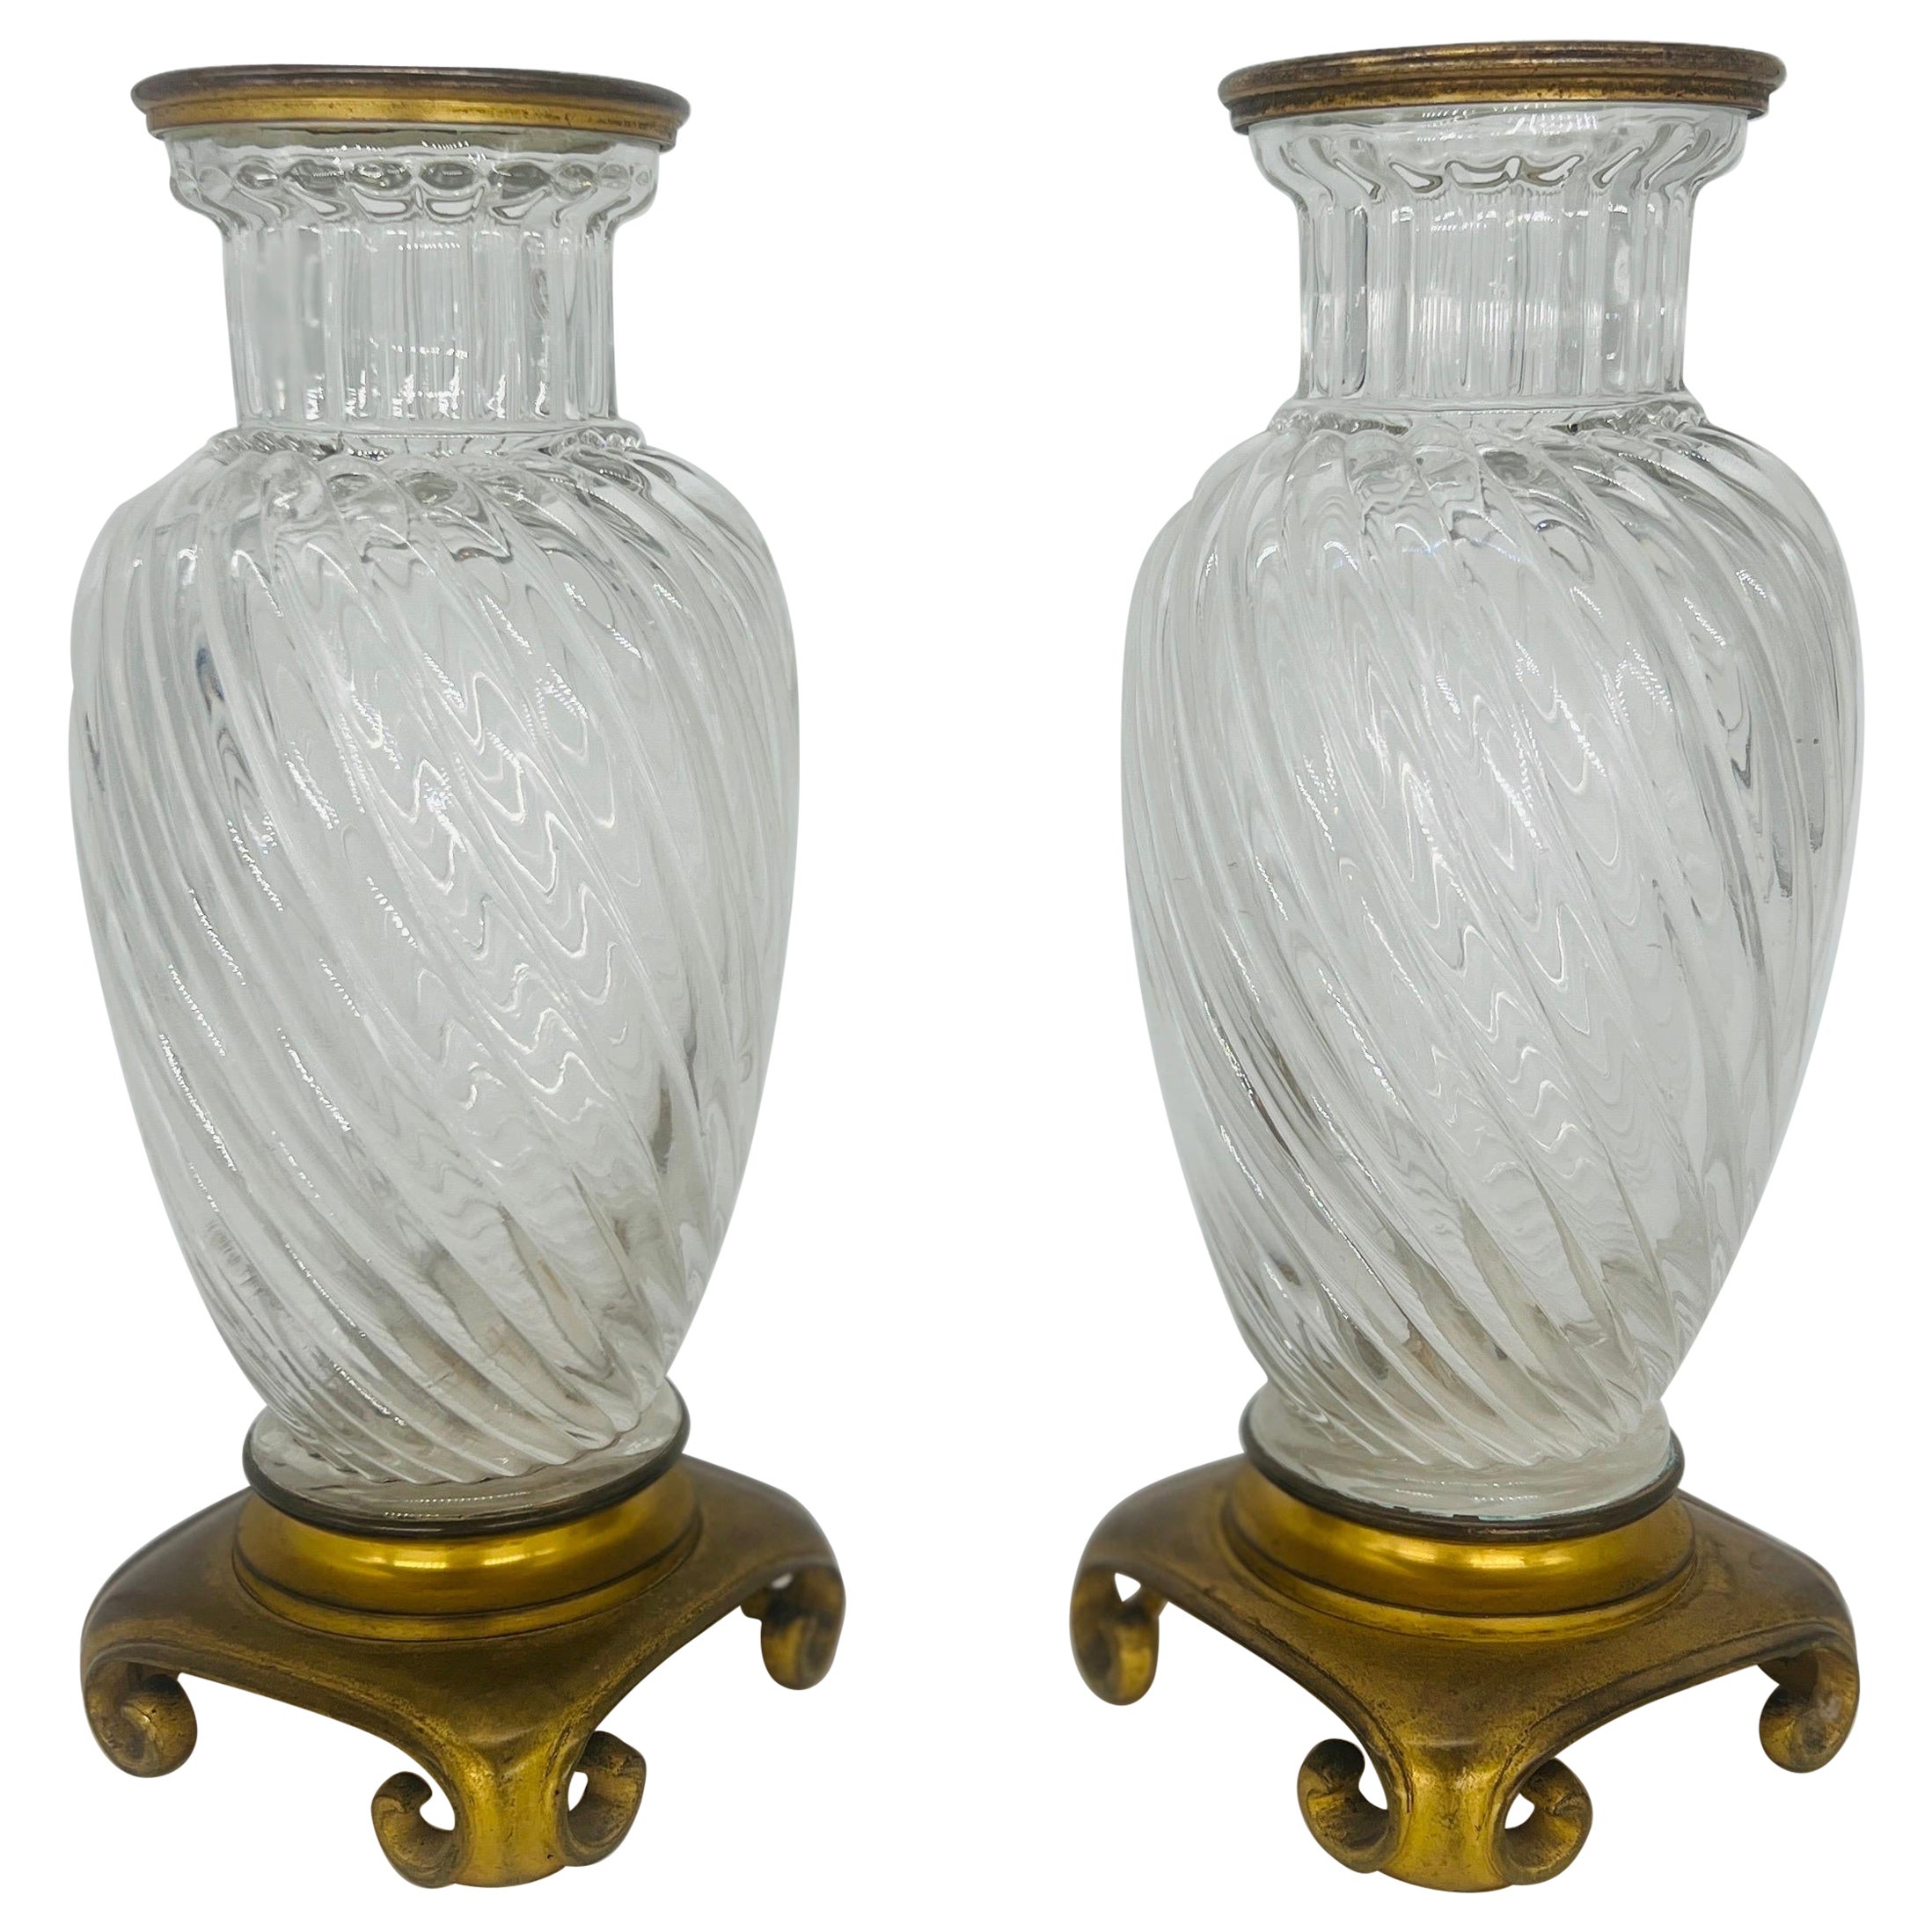 Paire de vases en cristal de Baccarat du 19ème siècle, motif tourbillonnant, montés sur bronze et bronze doré